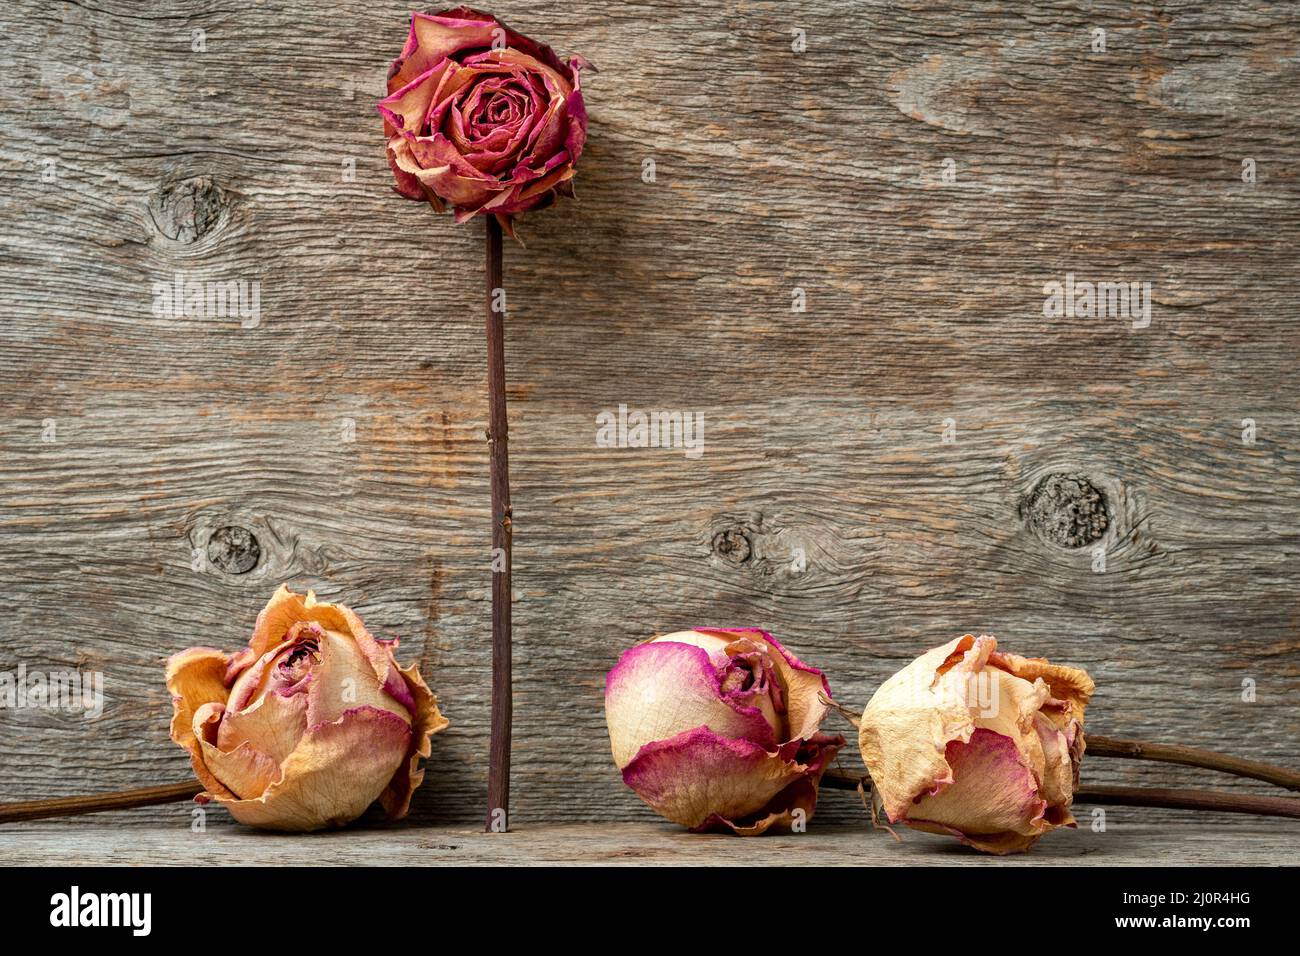 Romantischer nostalgischer Hintergrund mit toten Rosen Stockfoto